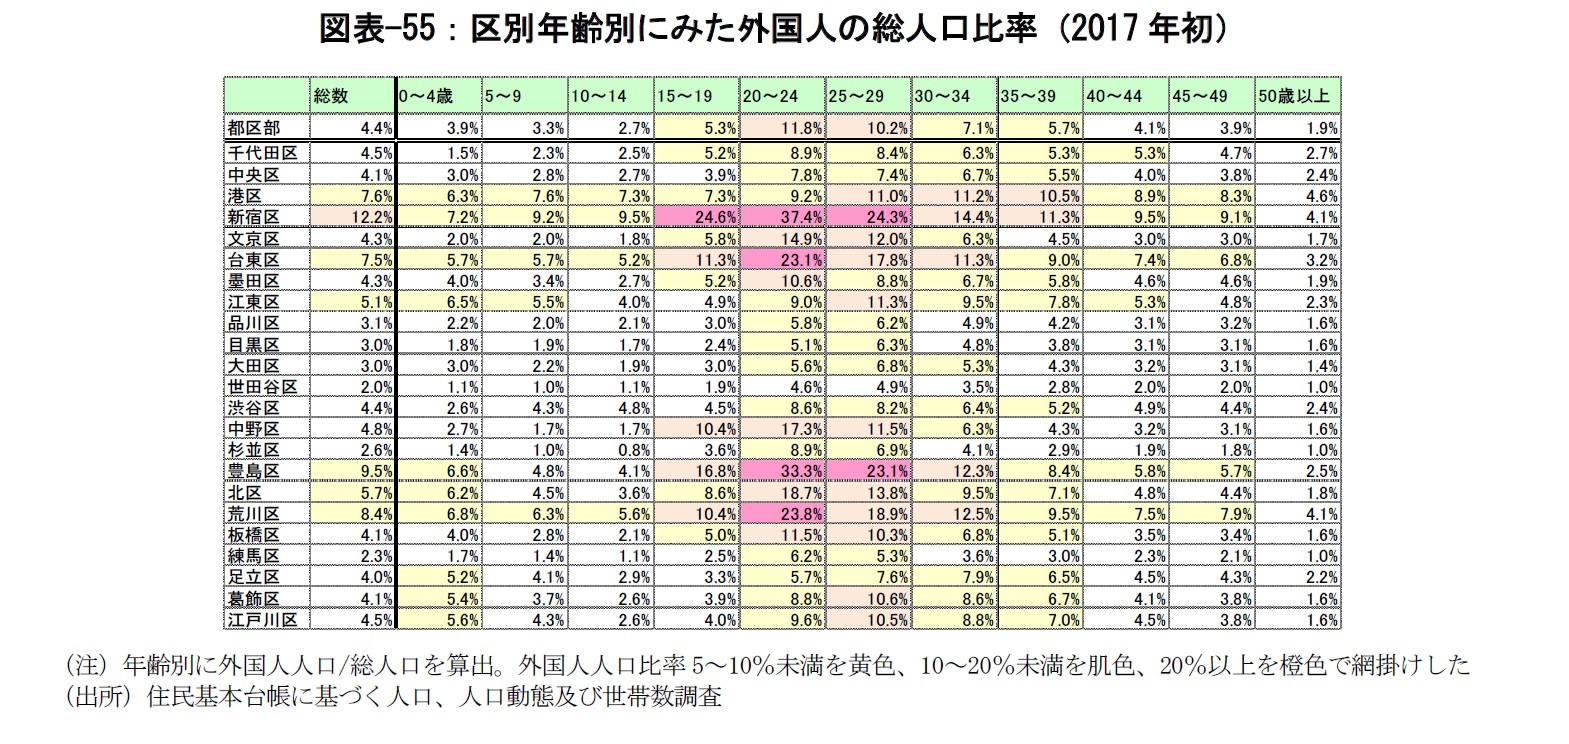 図表-55：区別年齢別にみた外国人の総人口比率（2017年初）